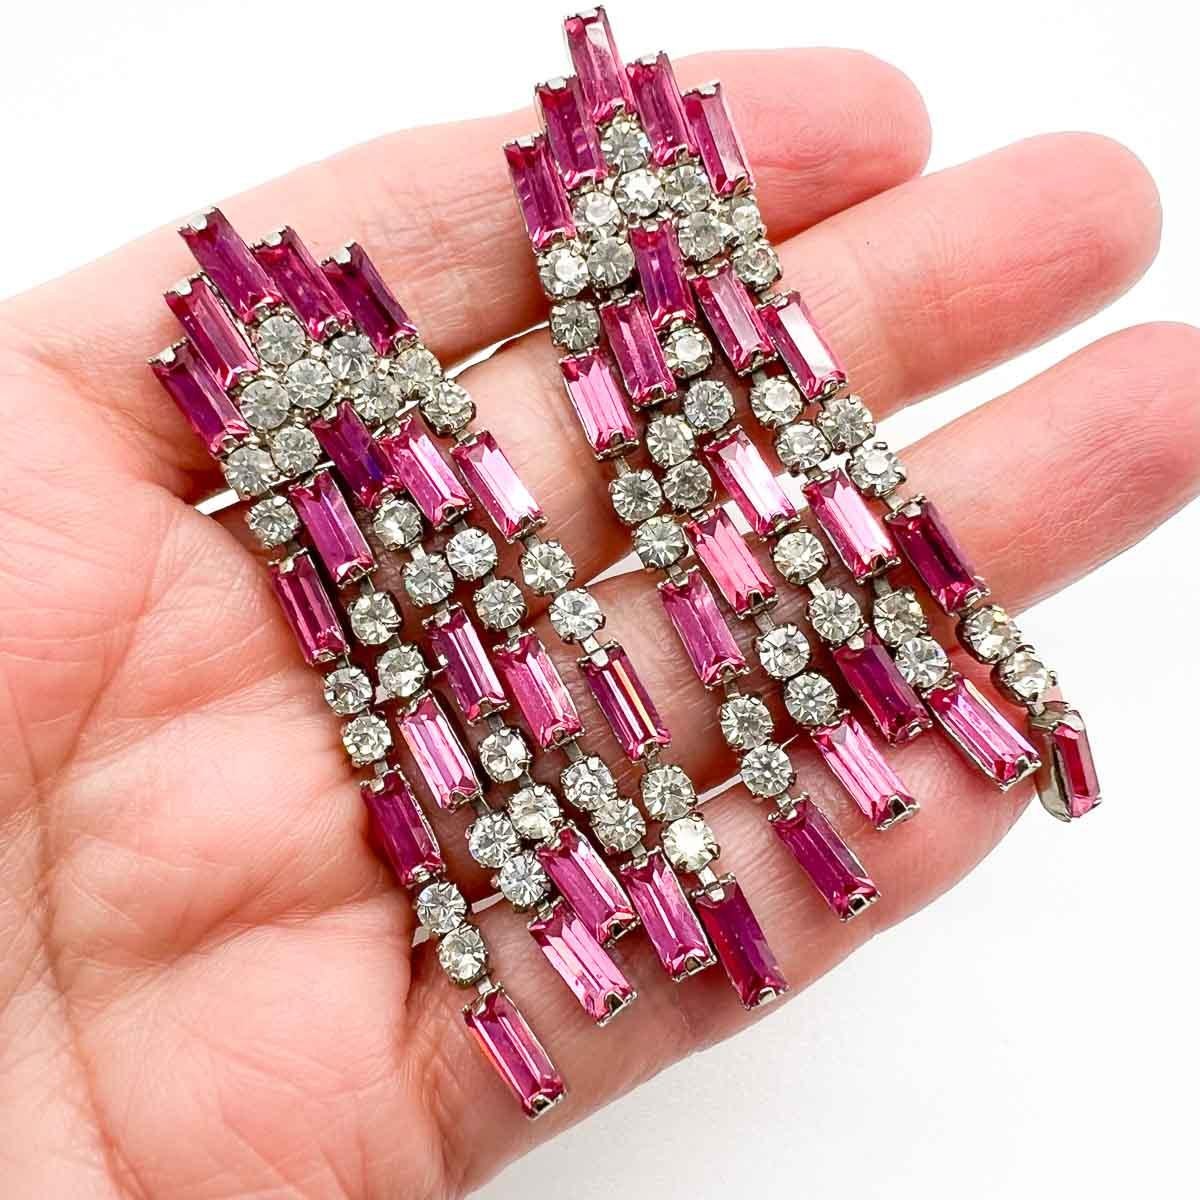 Hübsche rosa Baguette-Ohrringe im Vintage-Stil. Kaskaden von rosafarbenen und weißen Kristallsteinen im Baguetteschliff machen den Art-Déco-Stil perfekt.
Eine unsignierte Schönheit. Ein seltener Schatz. Nur weil ein Schmuckstück nicht den Namen